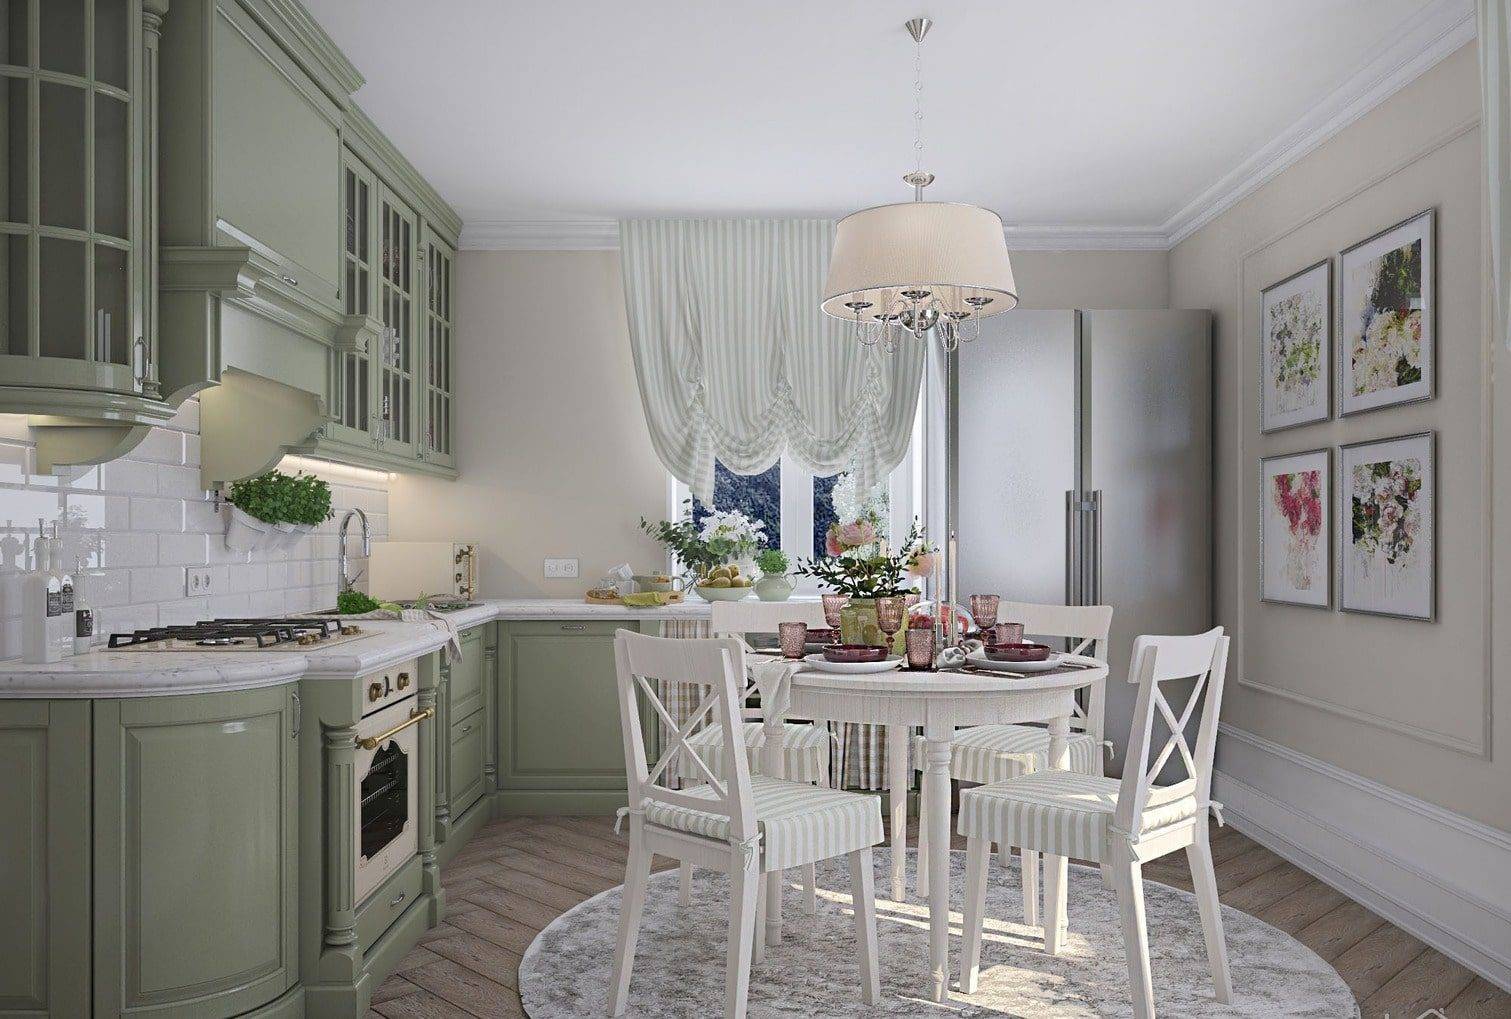 Кухня в стиле кафе или французский прованс в интерьере: дизайн и декор помещения